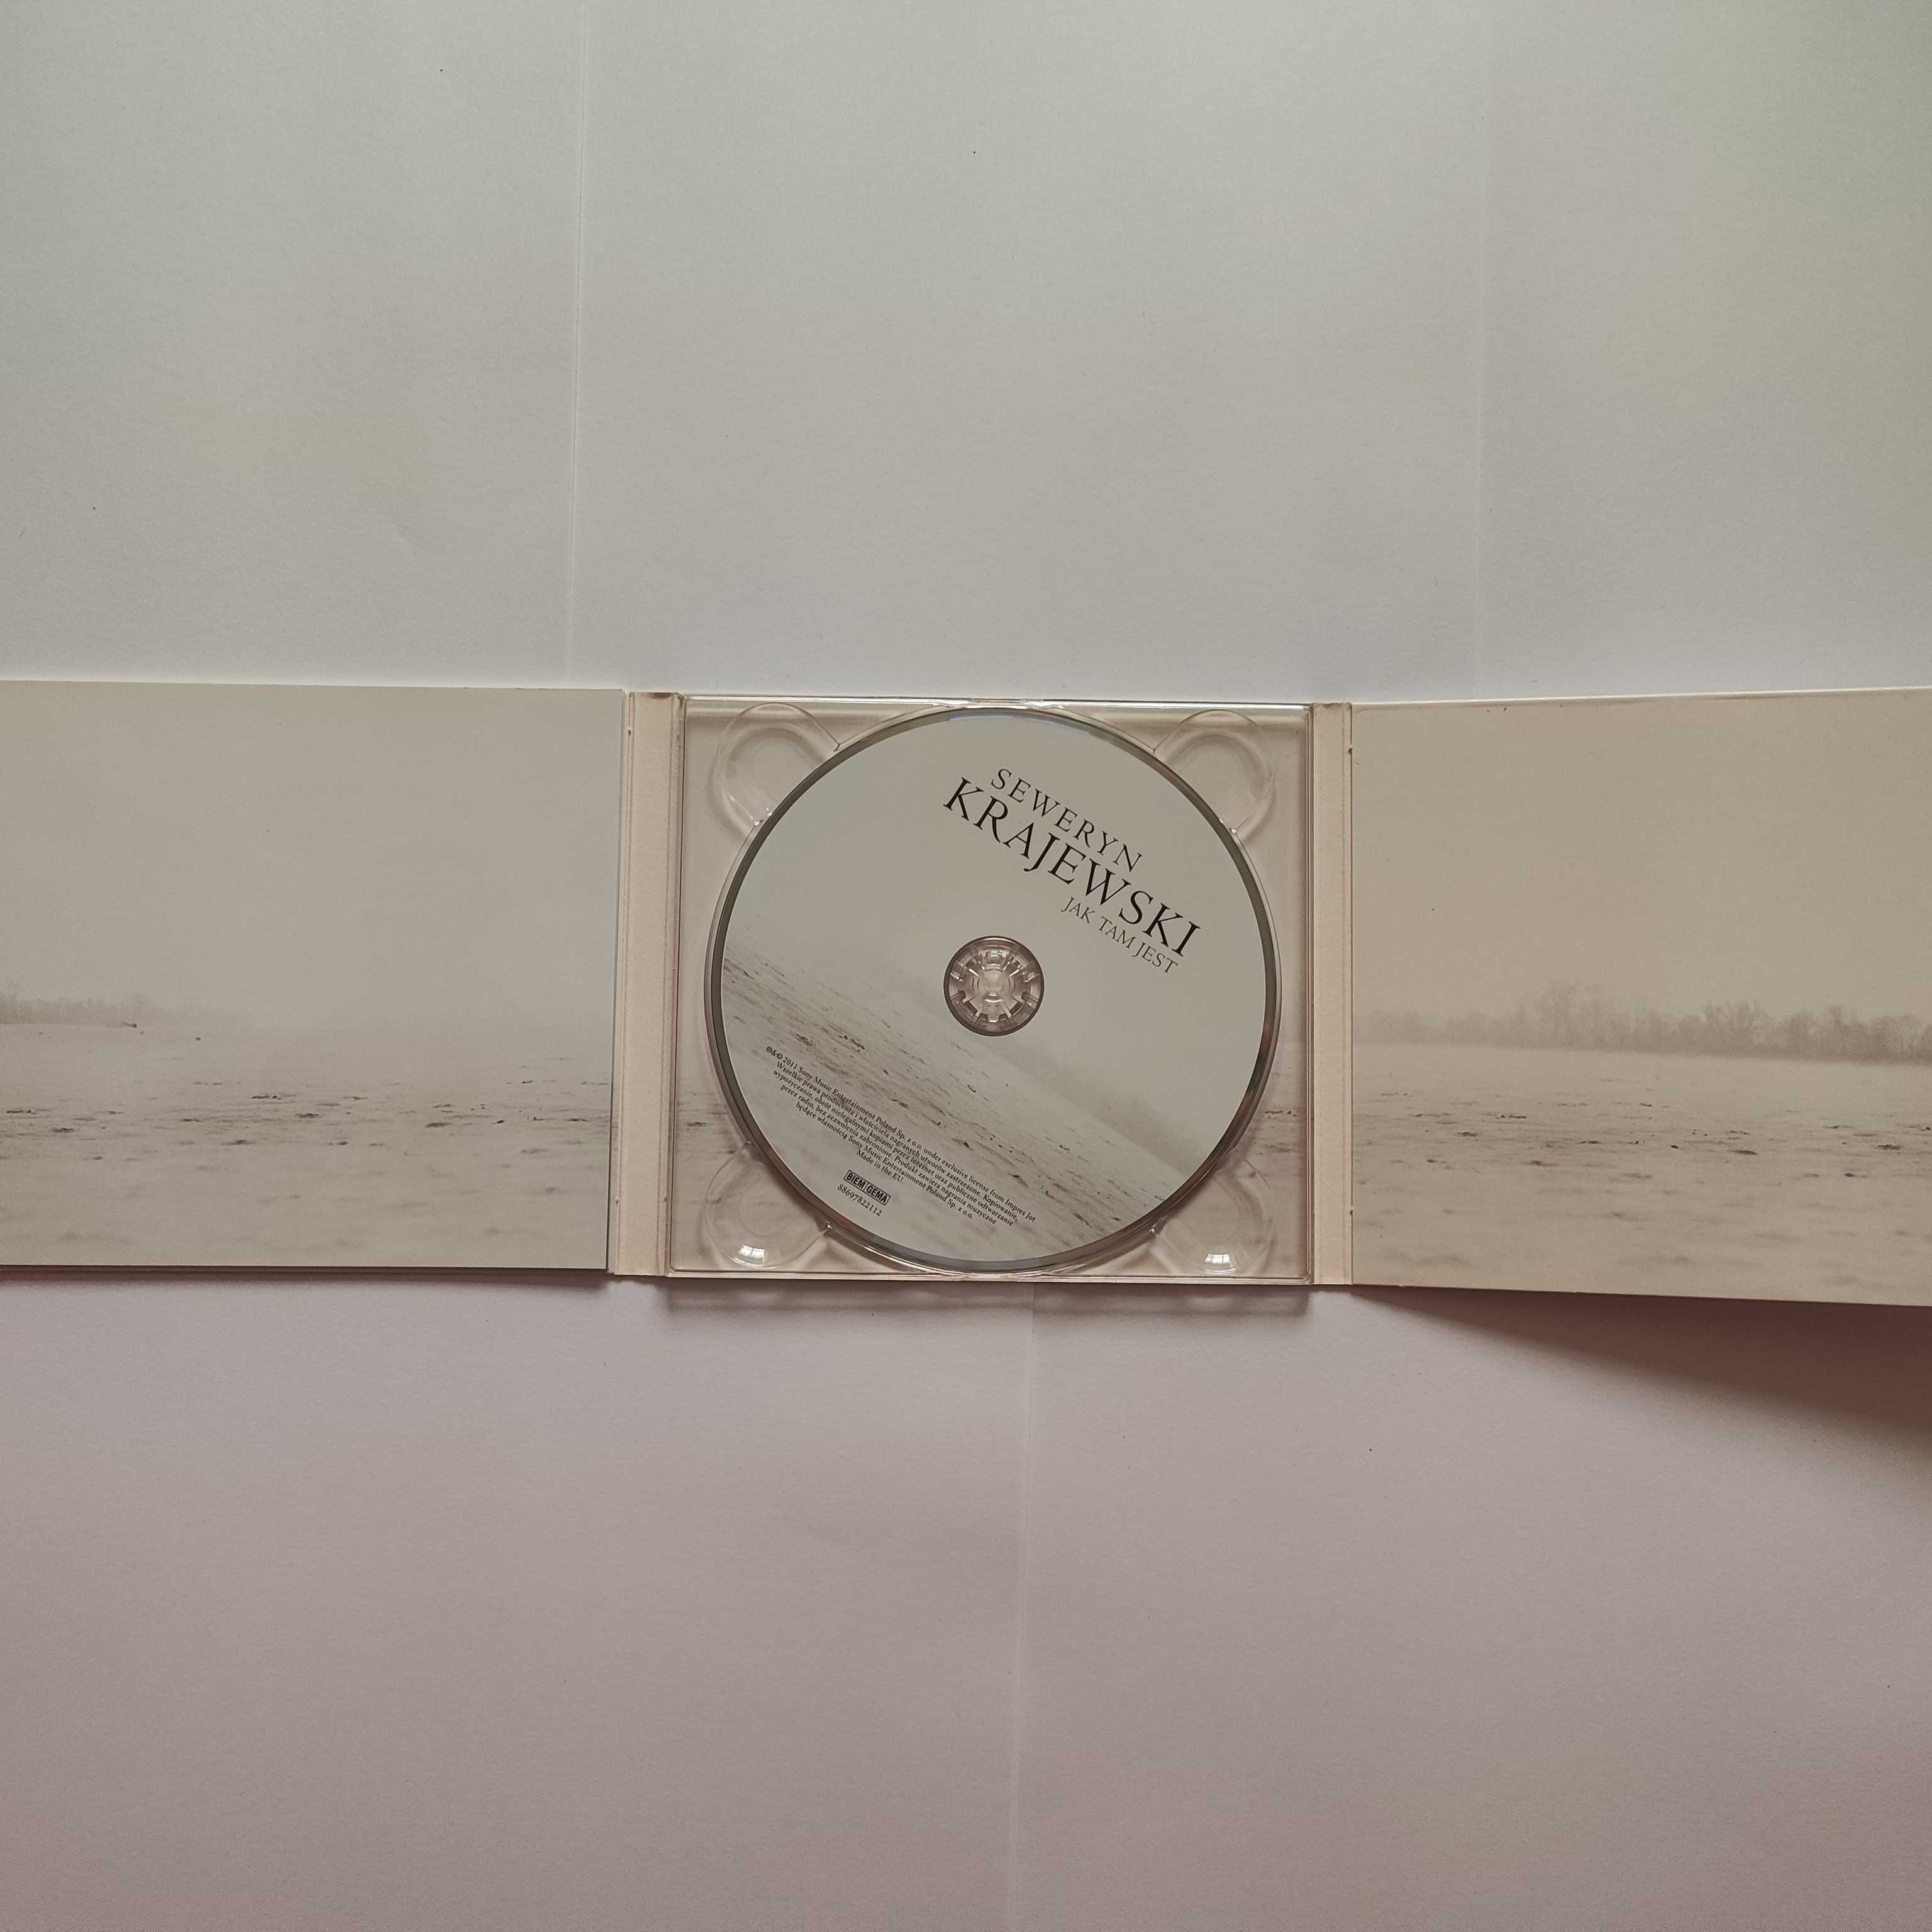 Płyta CD Seweryn Krajewski "Jak tam jest", wydanie 2011r